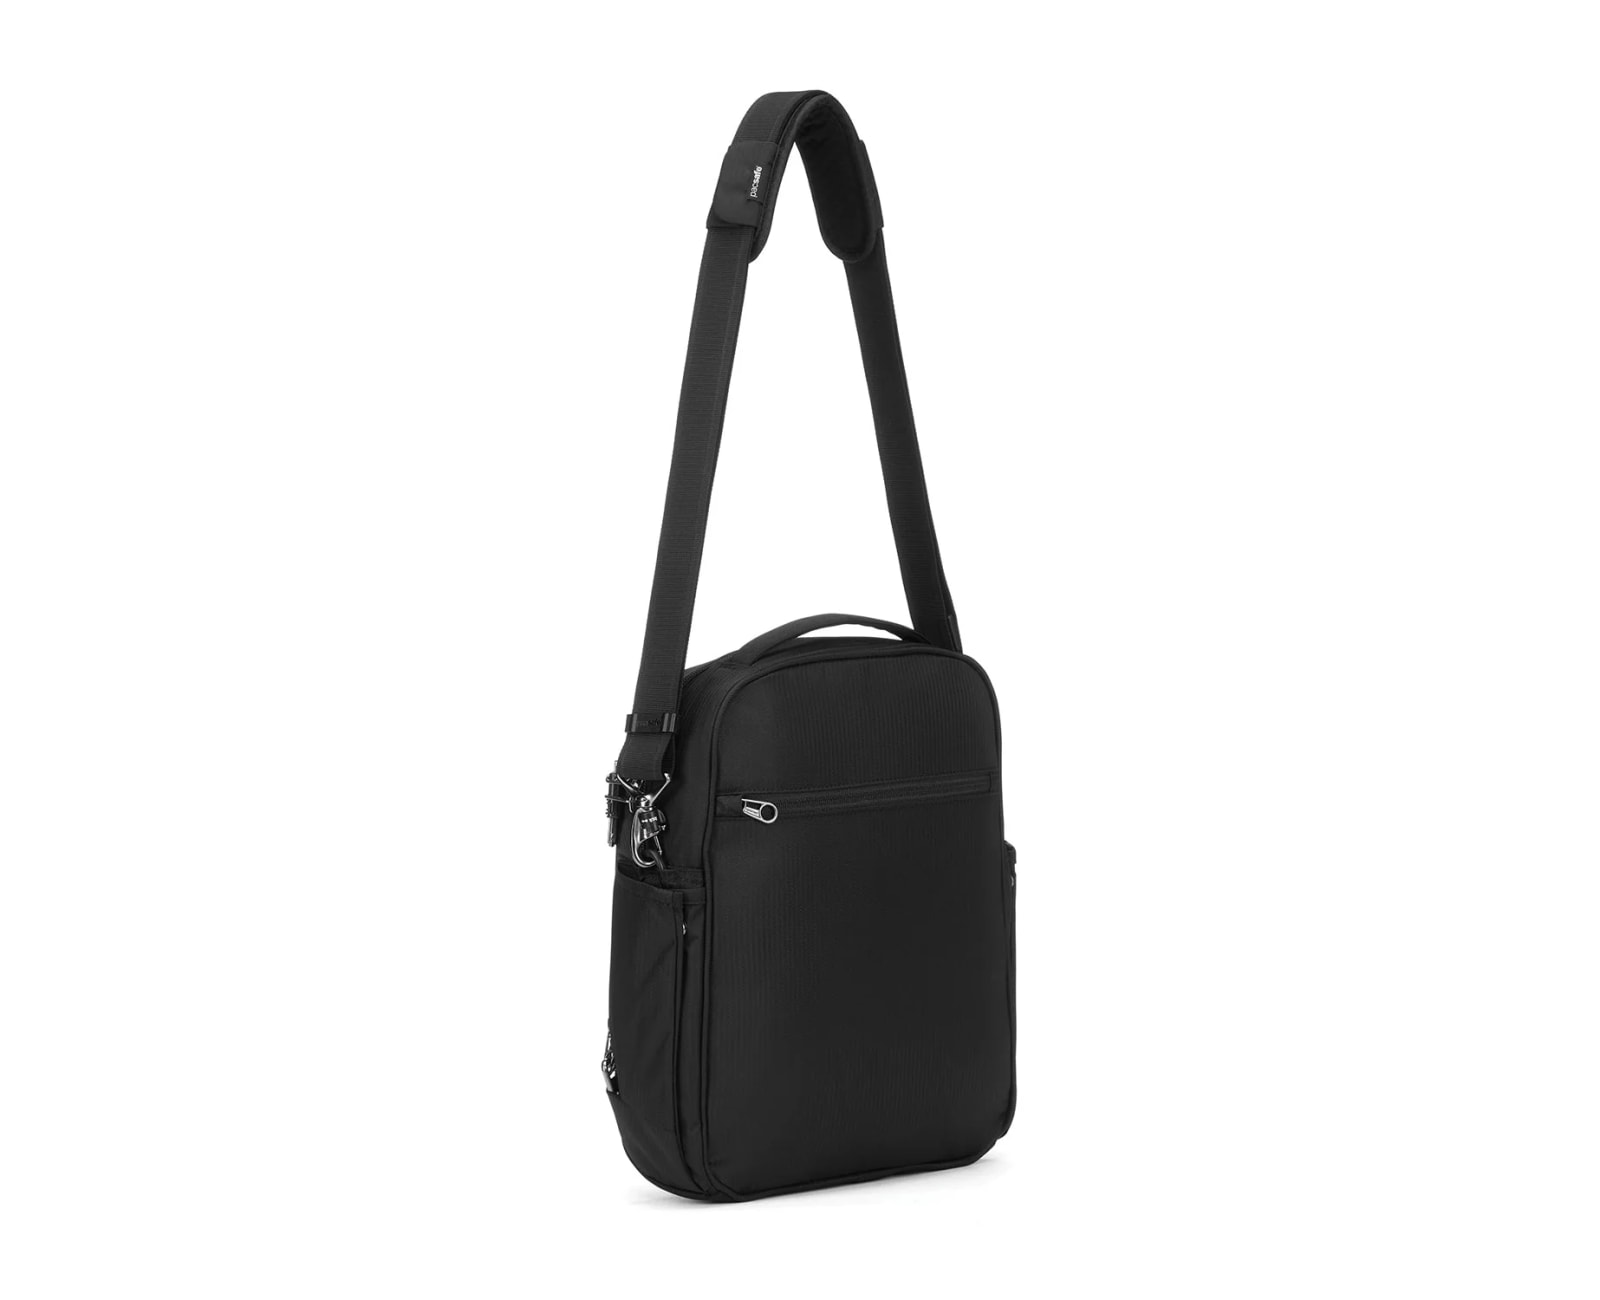 Pacsafe Metrosafe Ls250 Econyl Shoulder Bag - Black